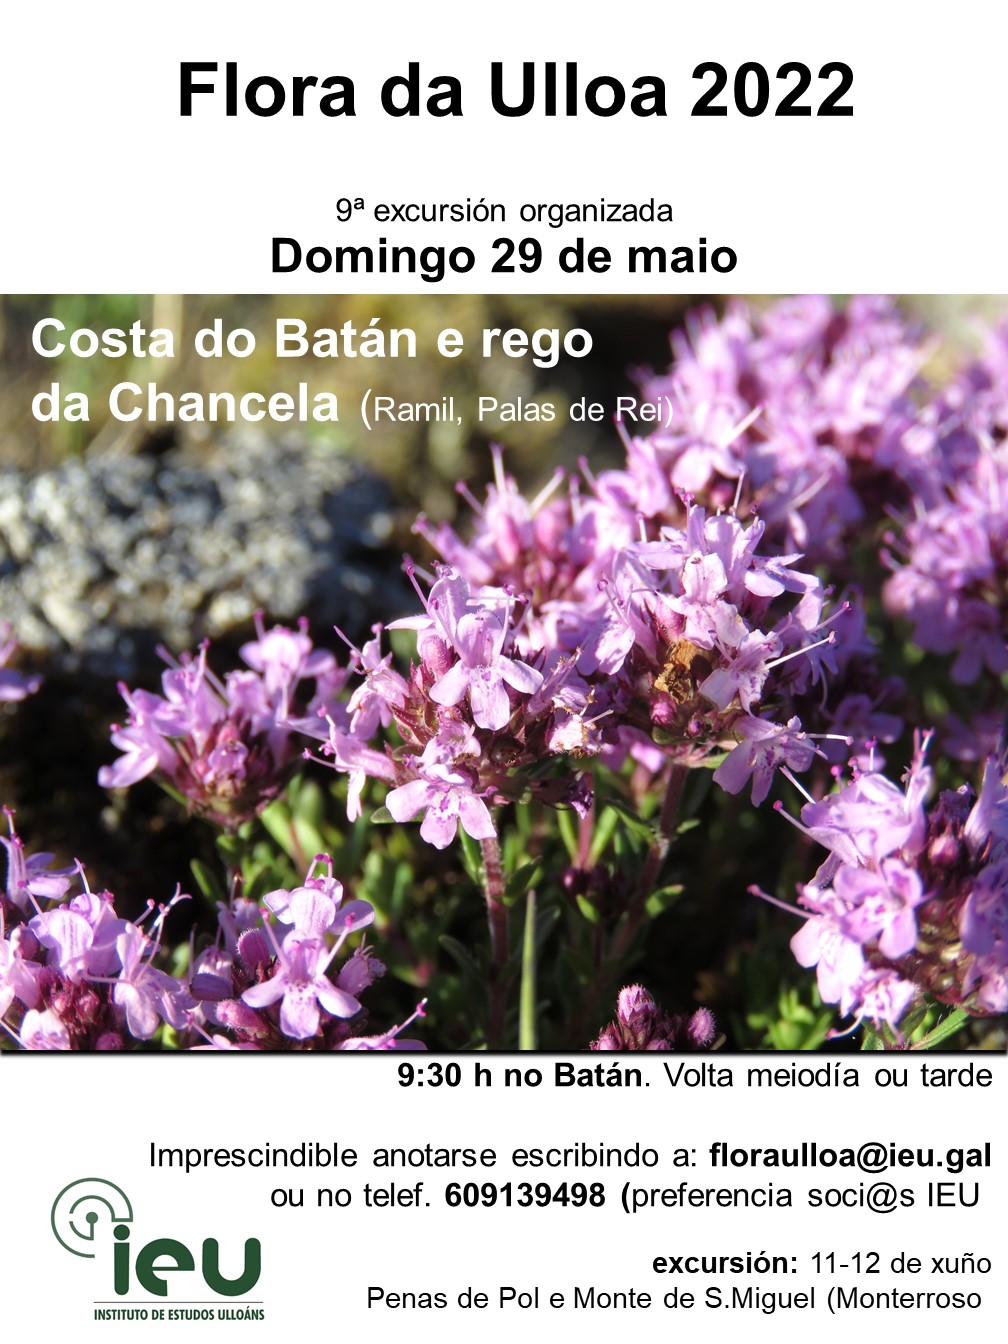 Excursión Flora da Ulloa 9ª-2022, Costa do Batán e Rego da Chancela